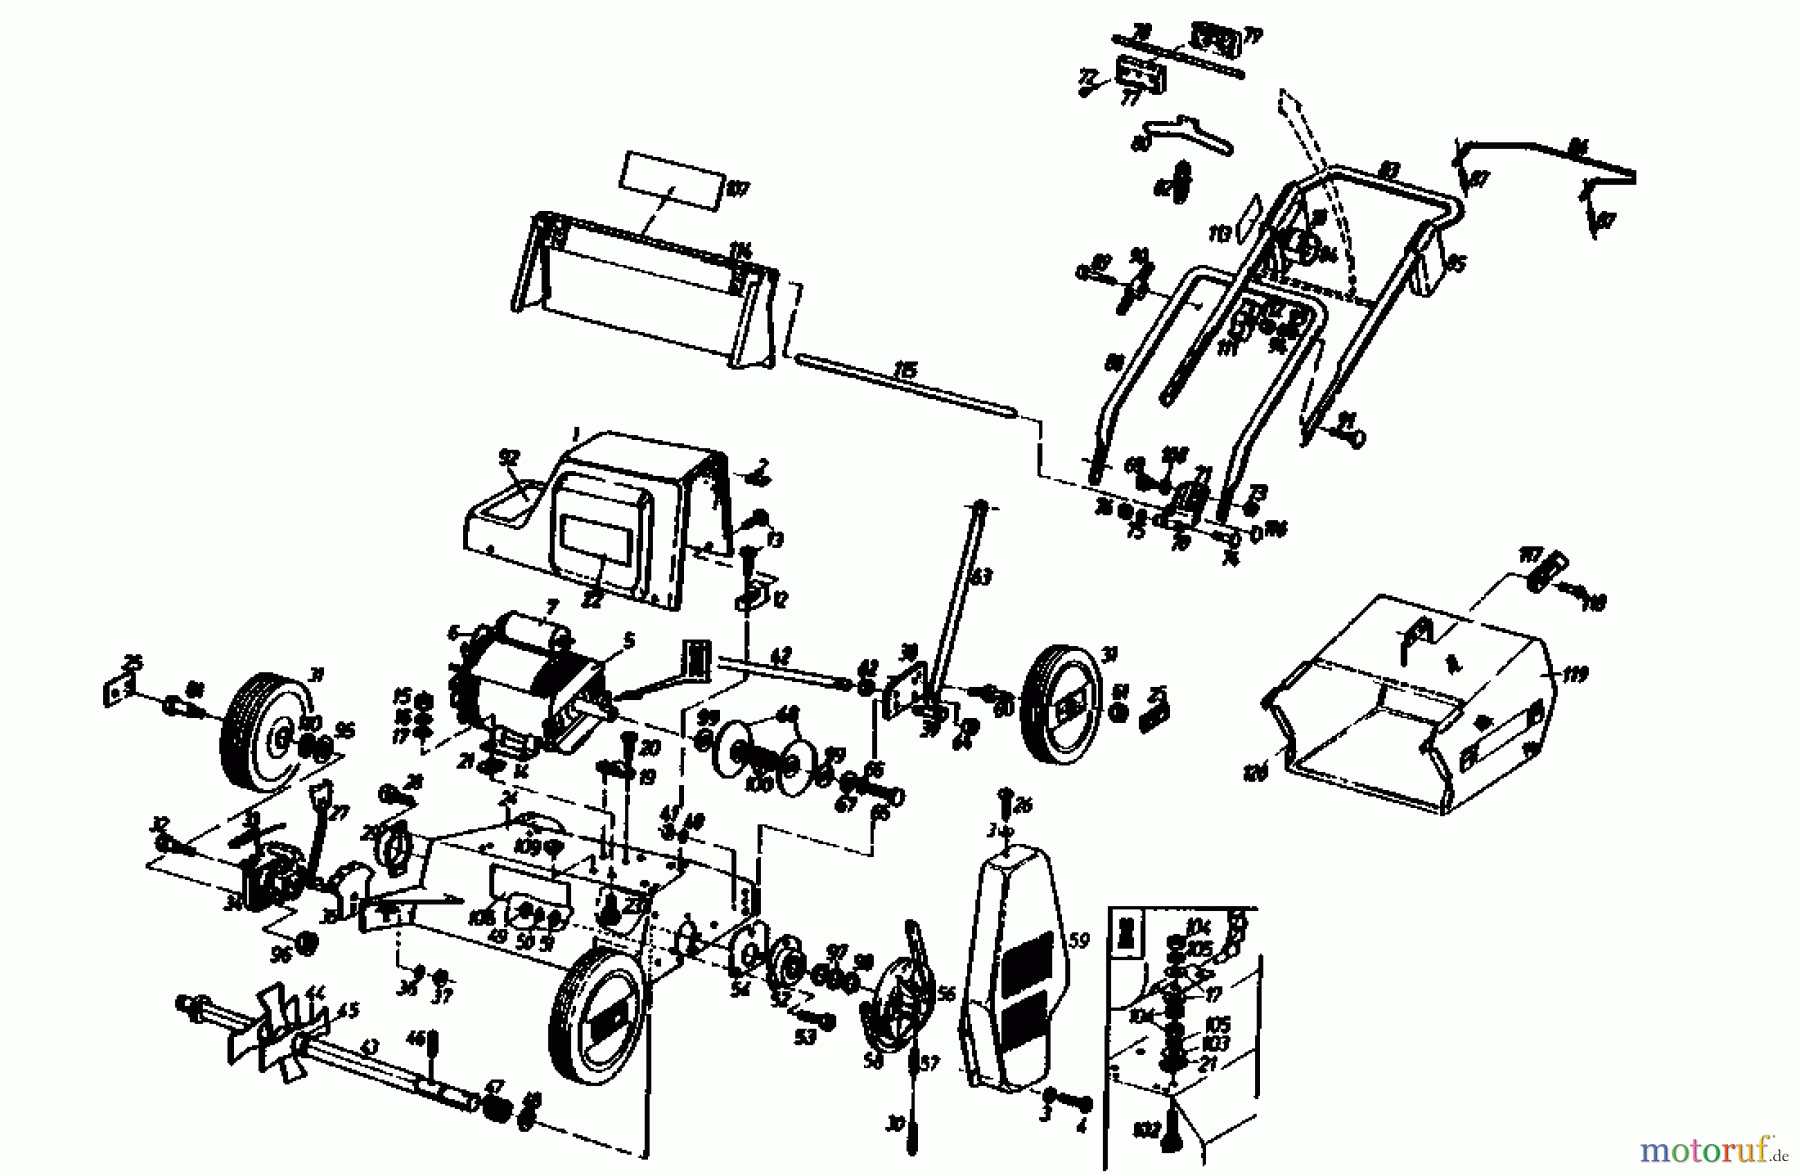  Gutbrod Electric verticutter MVE 400 04009.01  (1990) Basic machine